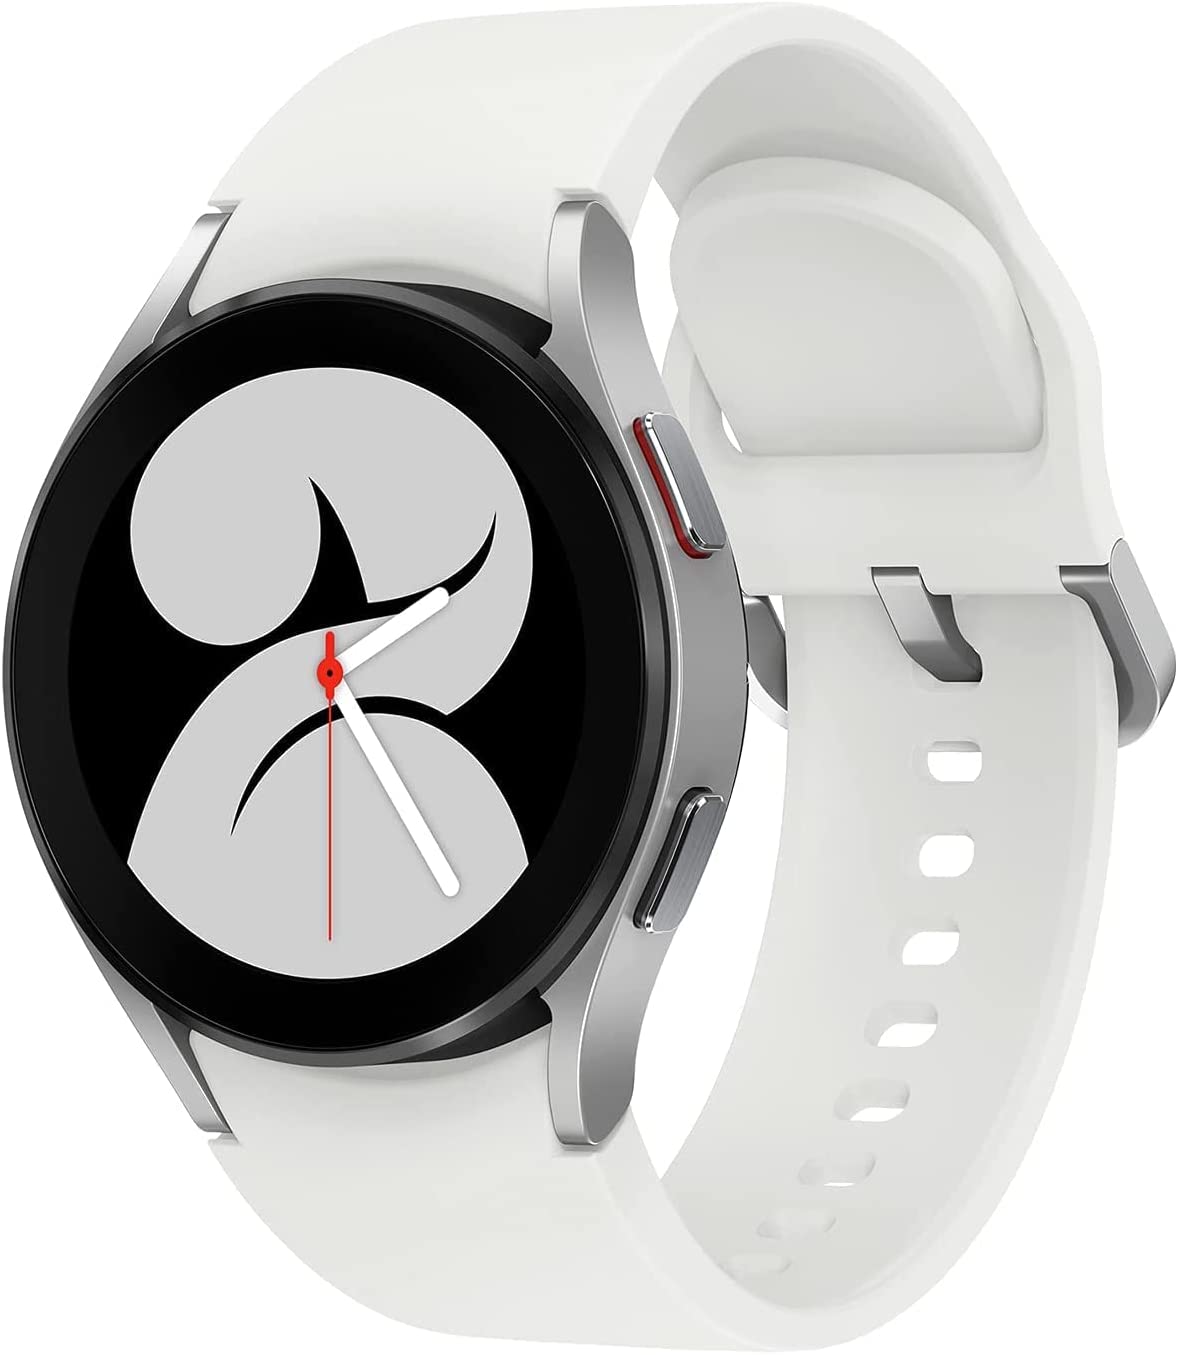 Samsung Galaxy Smart Watch 4 con banda blanca